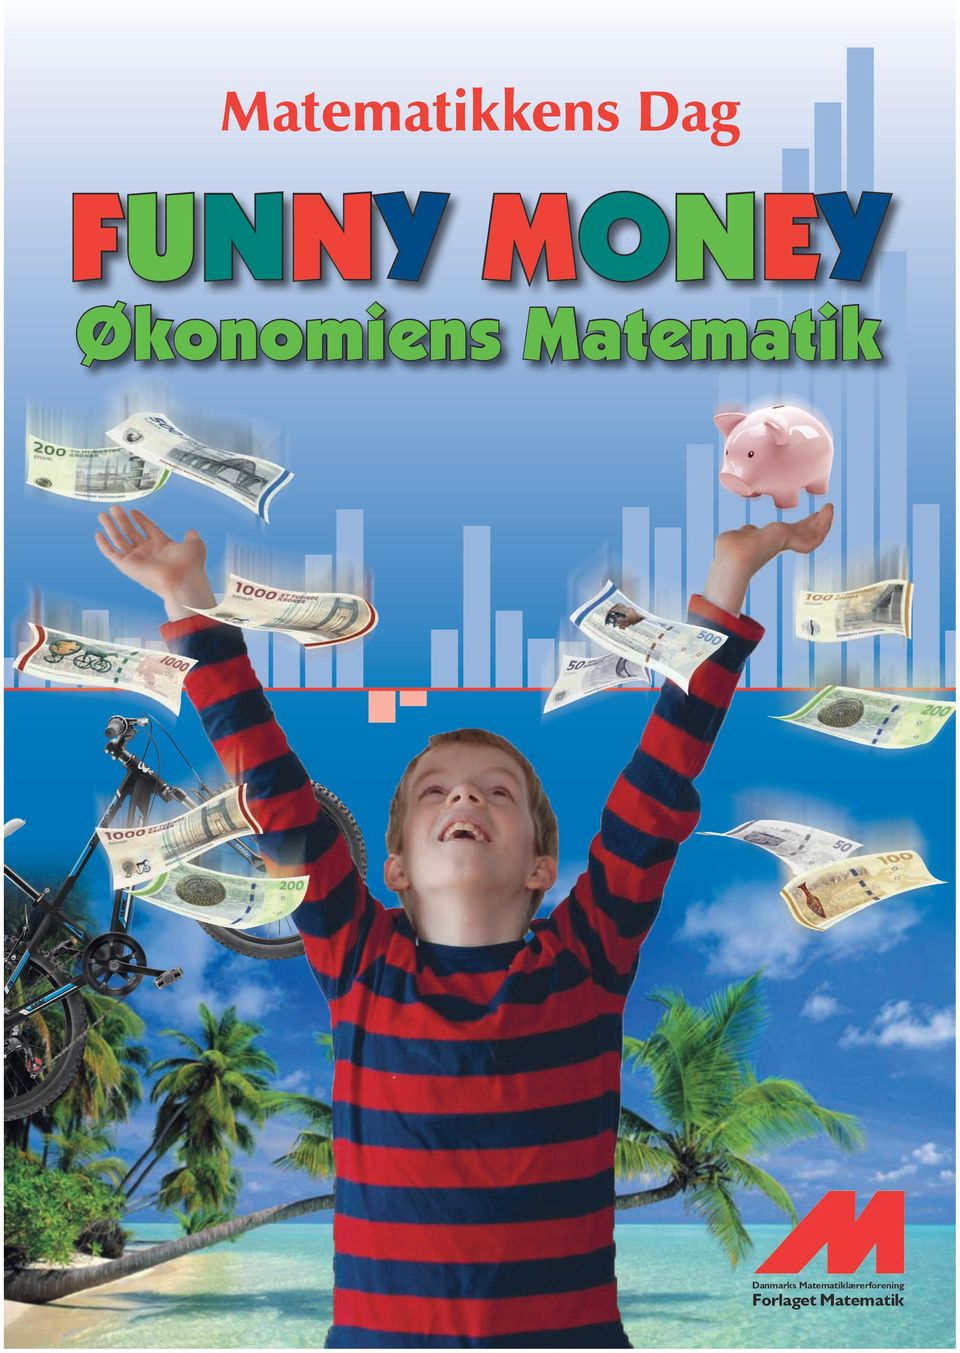 FUNNY MONEY - Økonomiens Matematik Økonomiens Matematik Med denne bog og den tilhørende film knytter anvendelsen af matematik til begrebet økonomi i samarbejde med Penge- og Pensionspanelet,